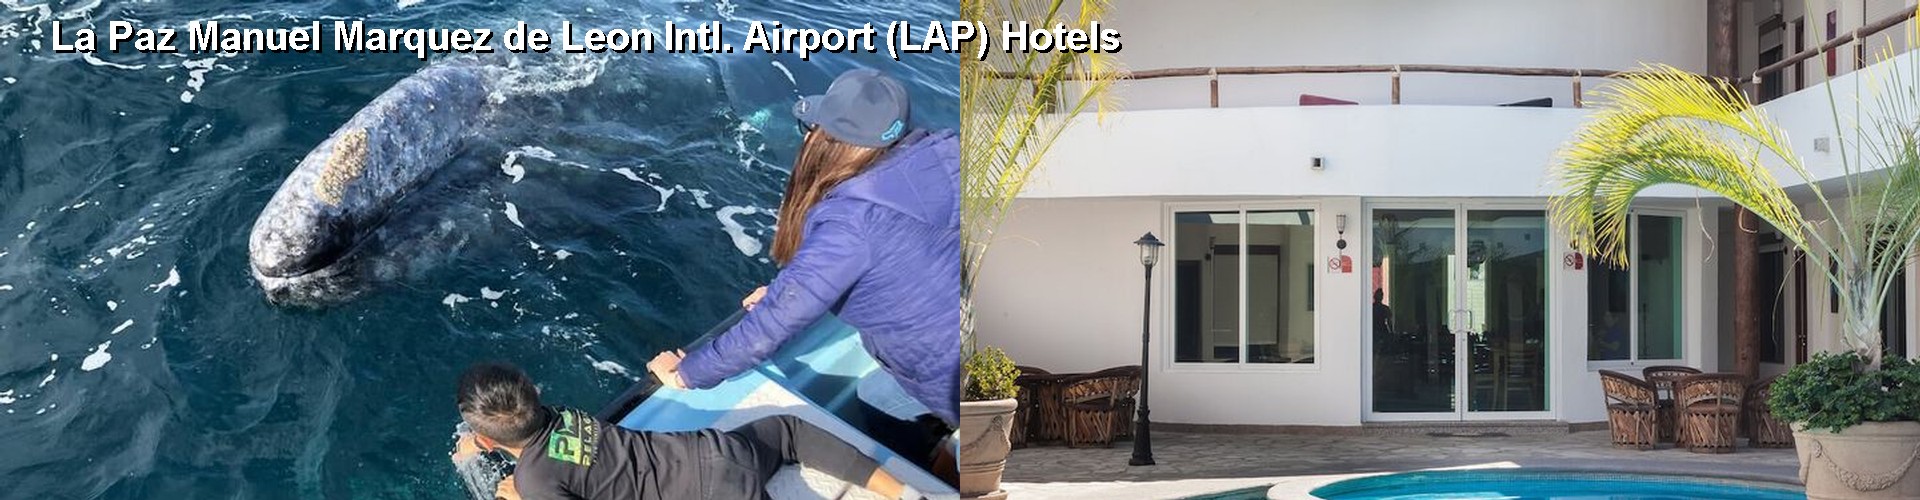 5 Best Hotels near La Paz Manuel Marquez de Leon Intl. Airport (LAP)